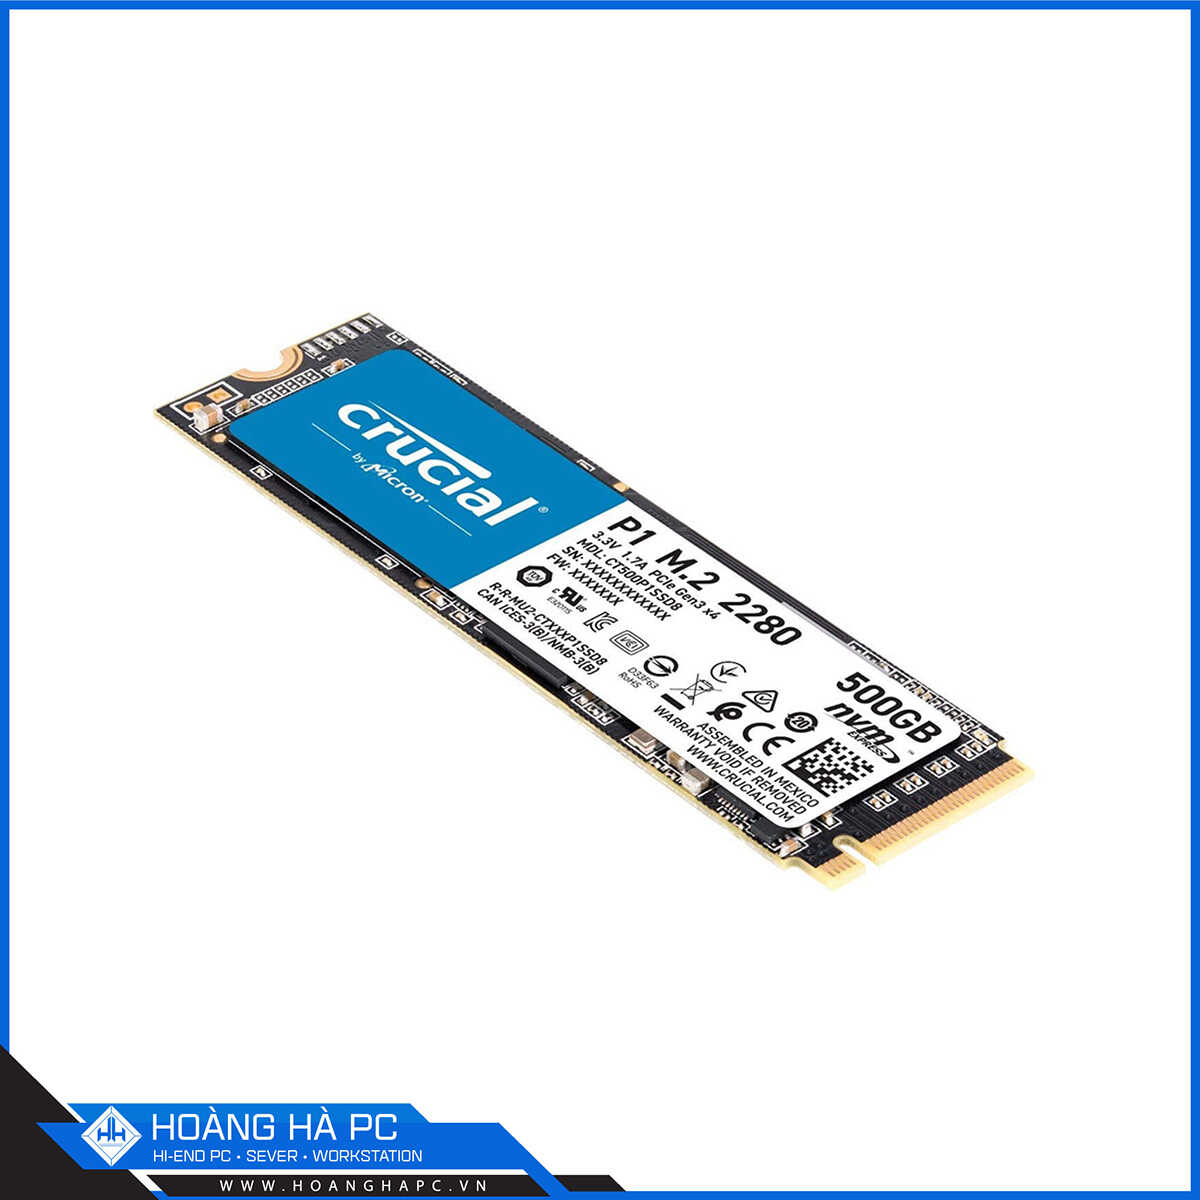 Ổ cứng SSD Crucial P1 500GB NVMe M.2 2280 PCIe Gen 3x4 (Đọc 1900MB/s - Ghi 950MB/s)